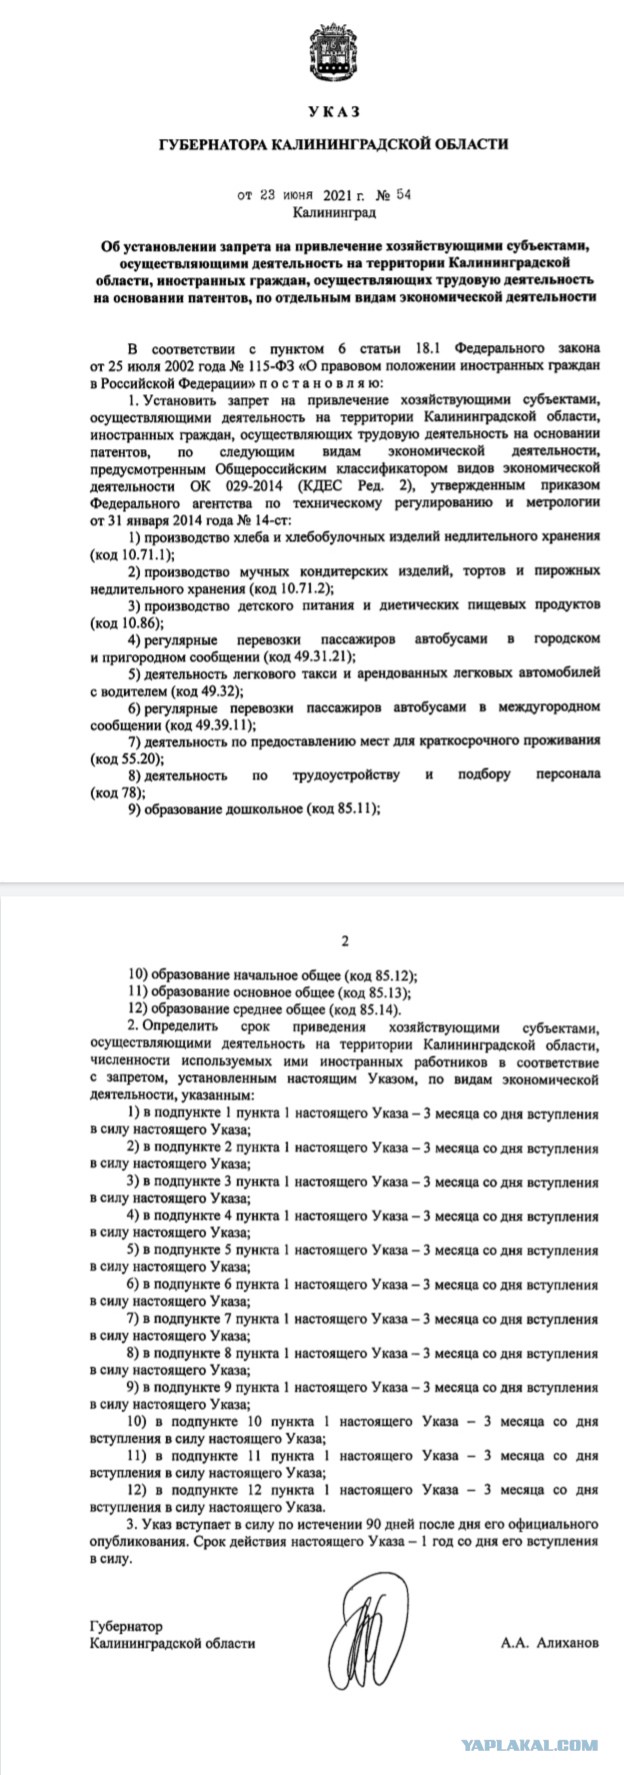 В Калининградской области мигрантам запретили работать по патенту